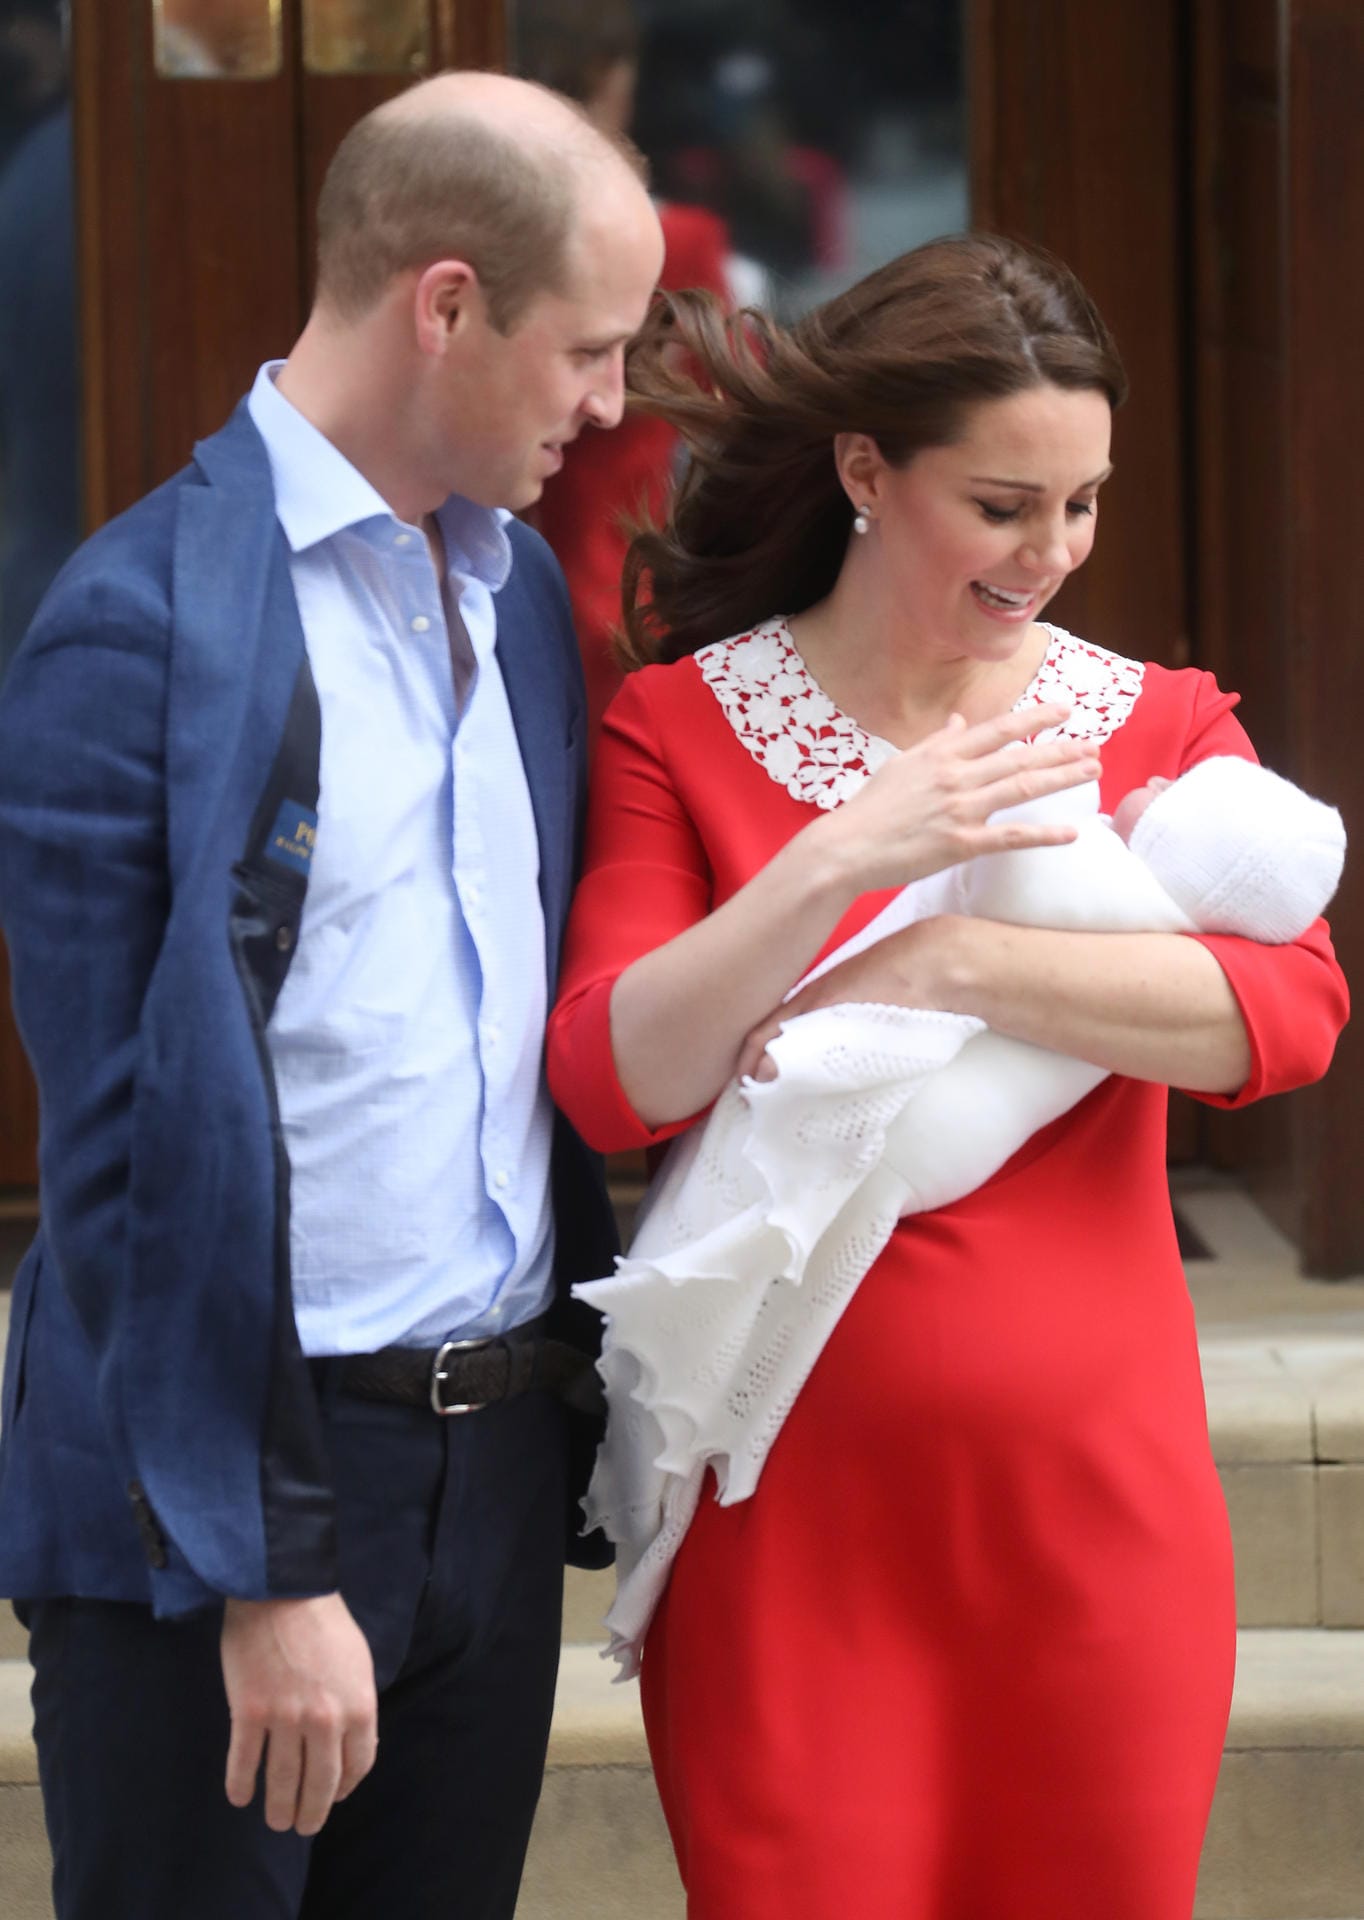 April 2018: Der dritte Spross der Royals kommt auf die Welt. Prinz Louis von Cambridge verzückt Mama und Papa. Kate präsentiert ihr drittes Kind in einem auffälligem roten Kleid der Öffentlichkeit.